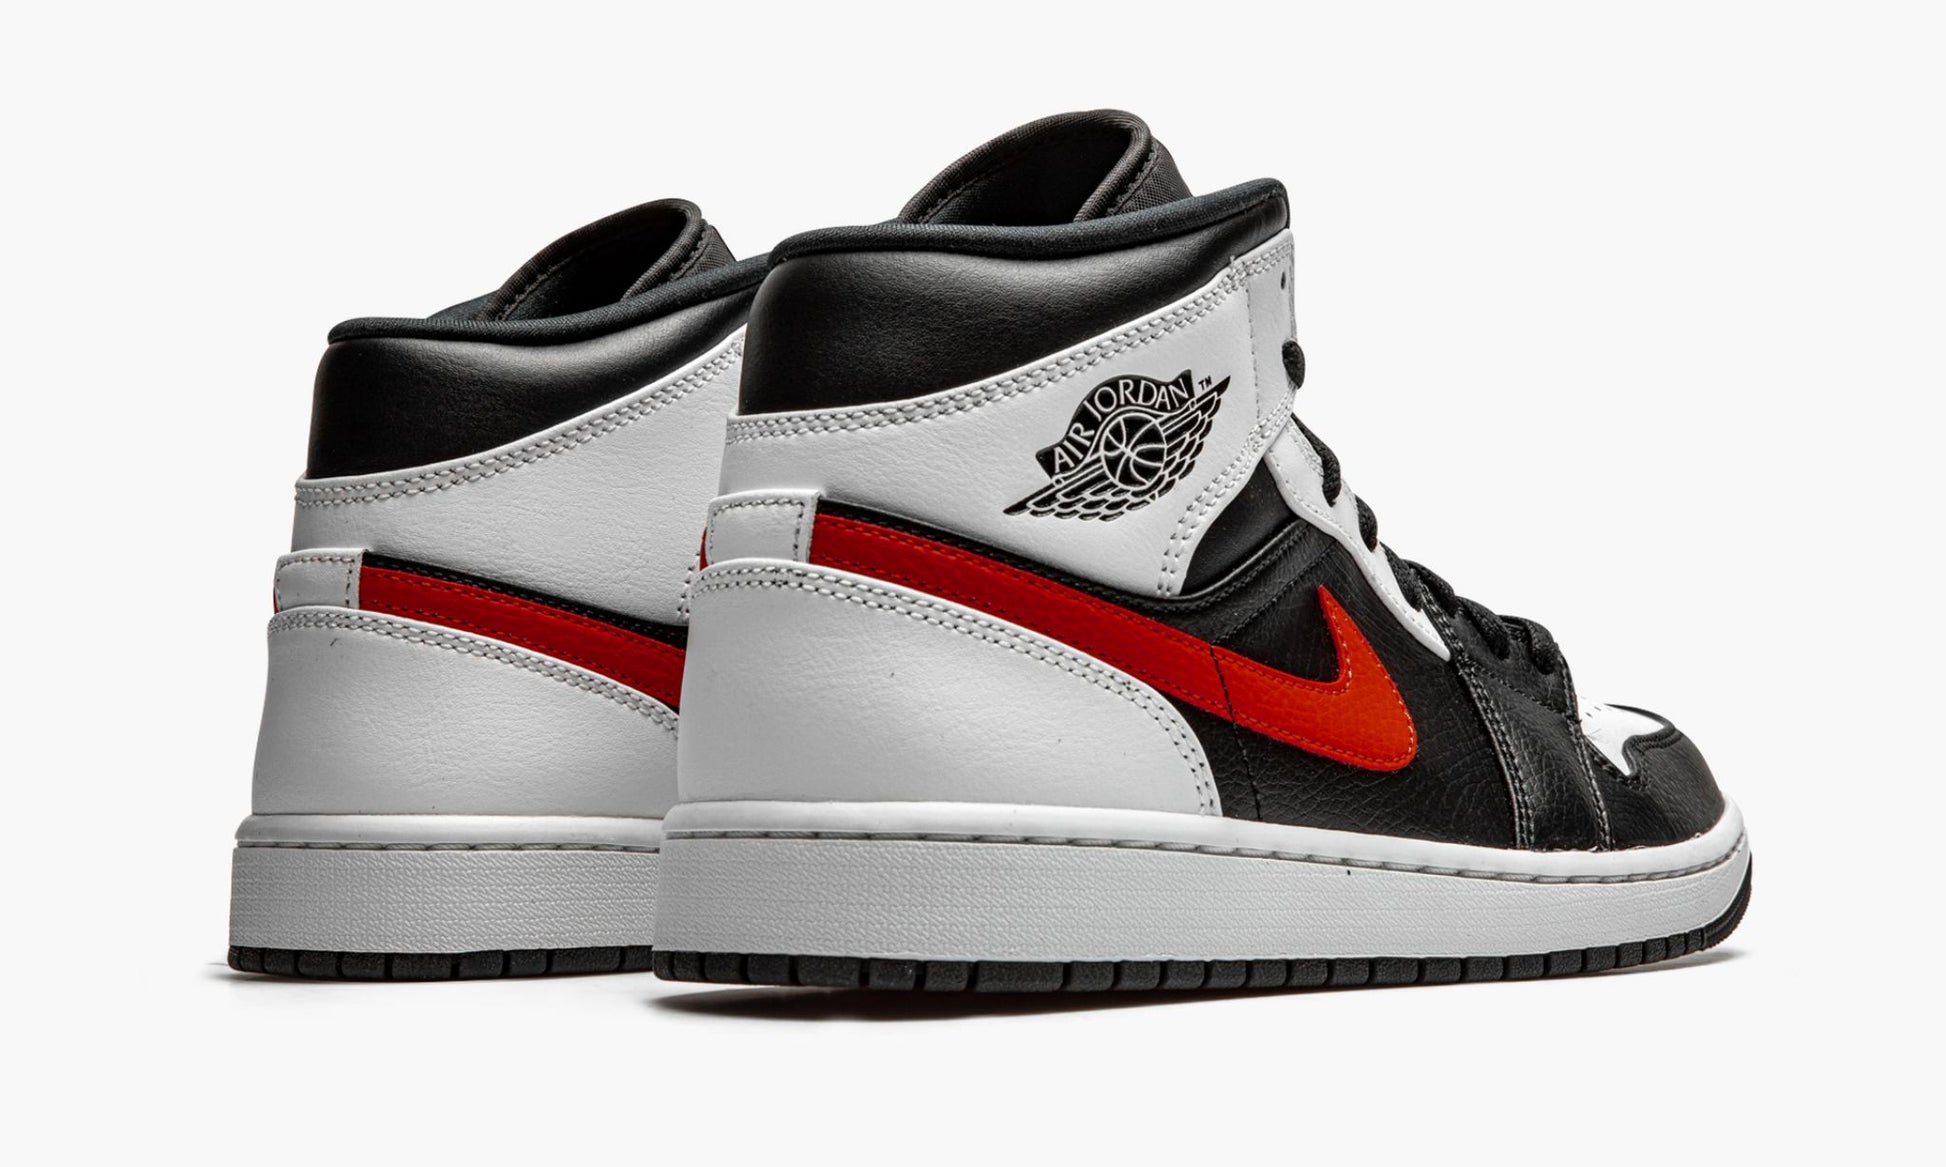 dejar Solo haz Sede Nike Air Jordan 1 Mid Black Chile Red White - 554724 075 - Archive Sneakers